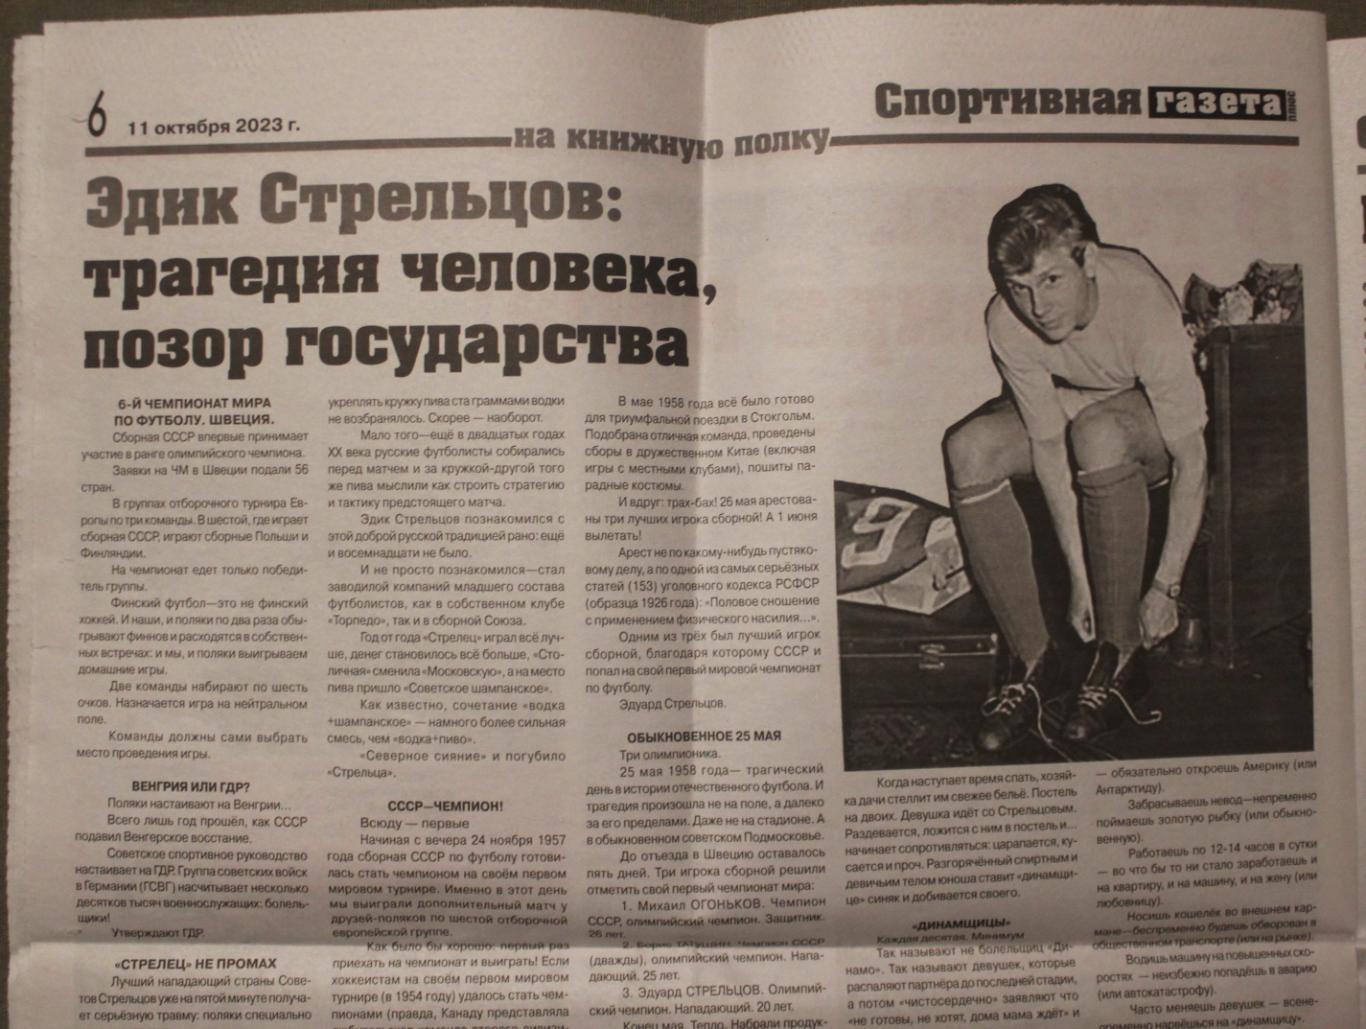 Спортивная газета Омск № 5 (126) 11.10.2023 4